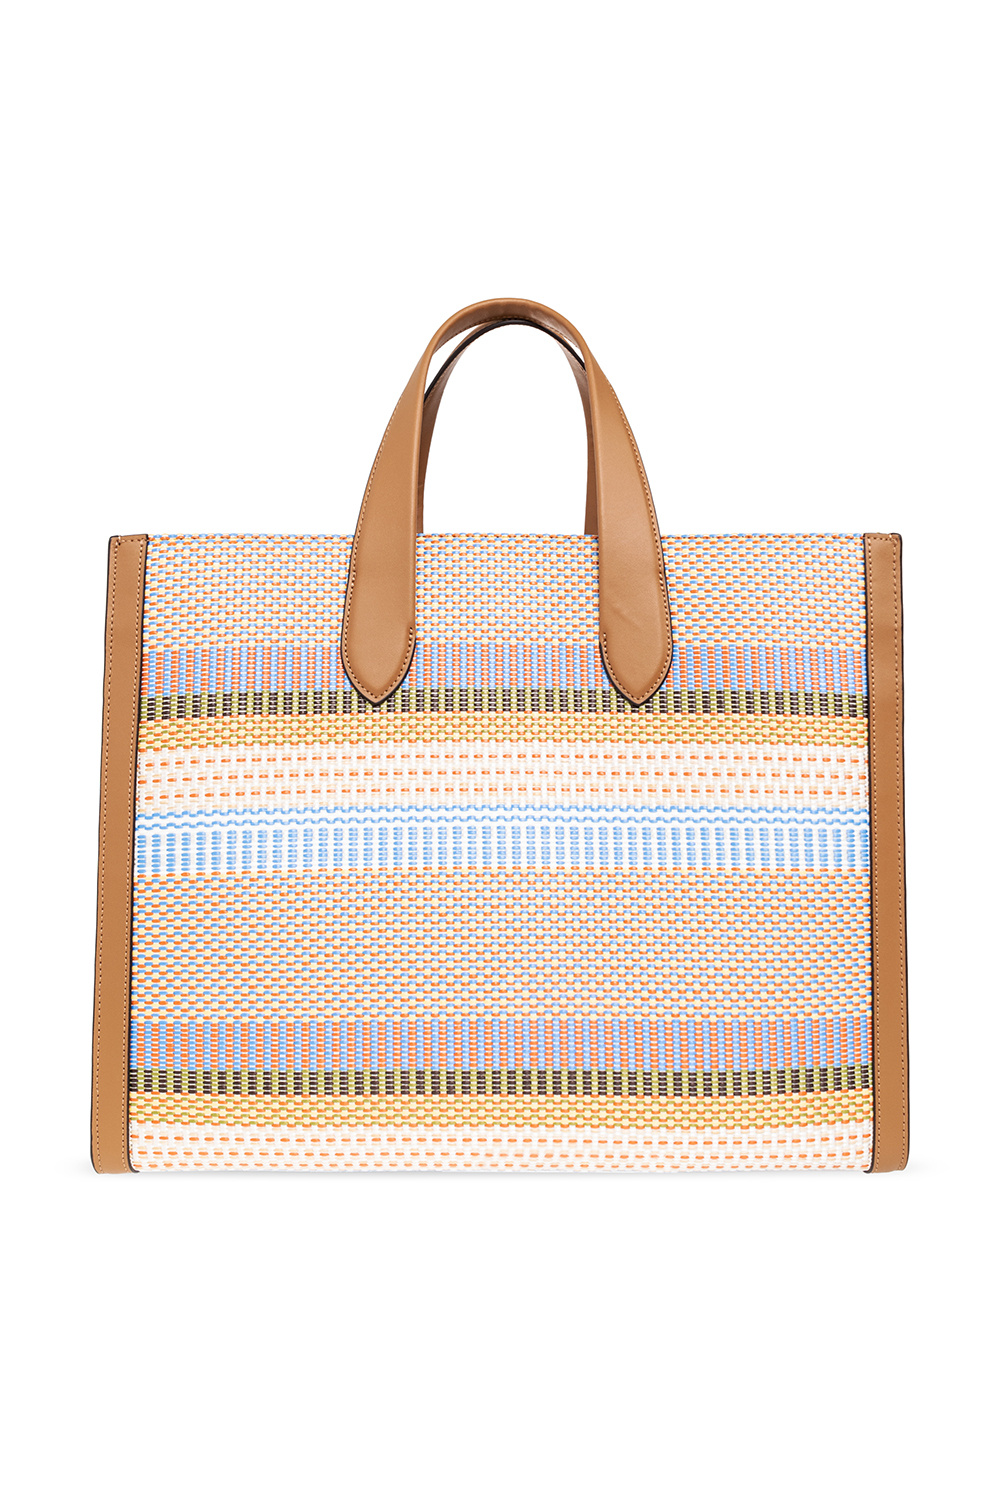 Kate Spade ‘Manhattan’ shopper bag